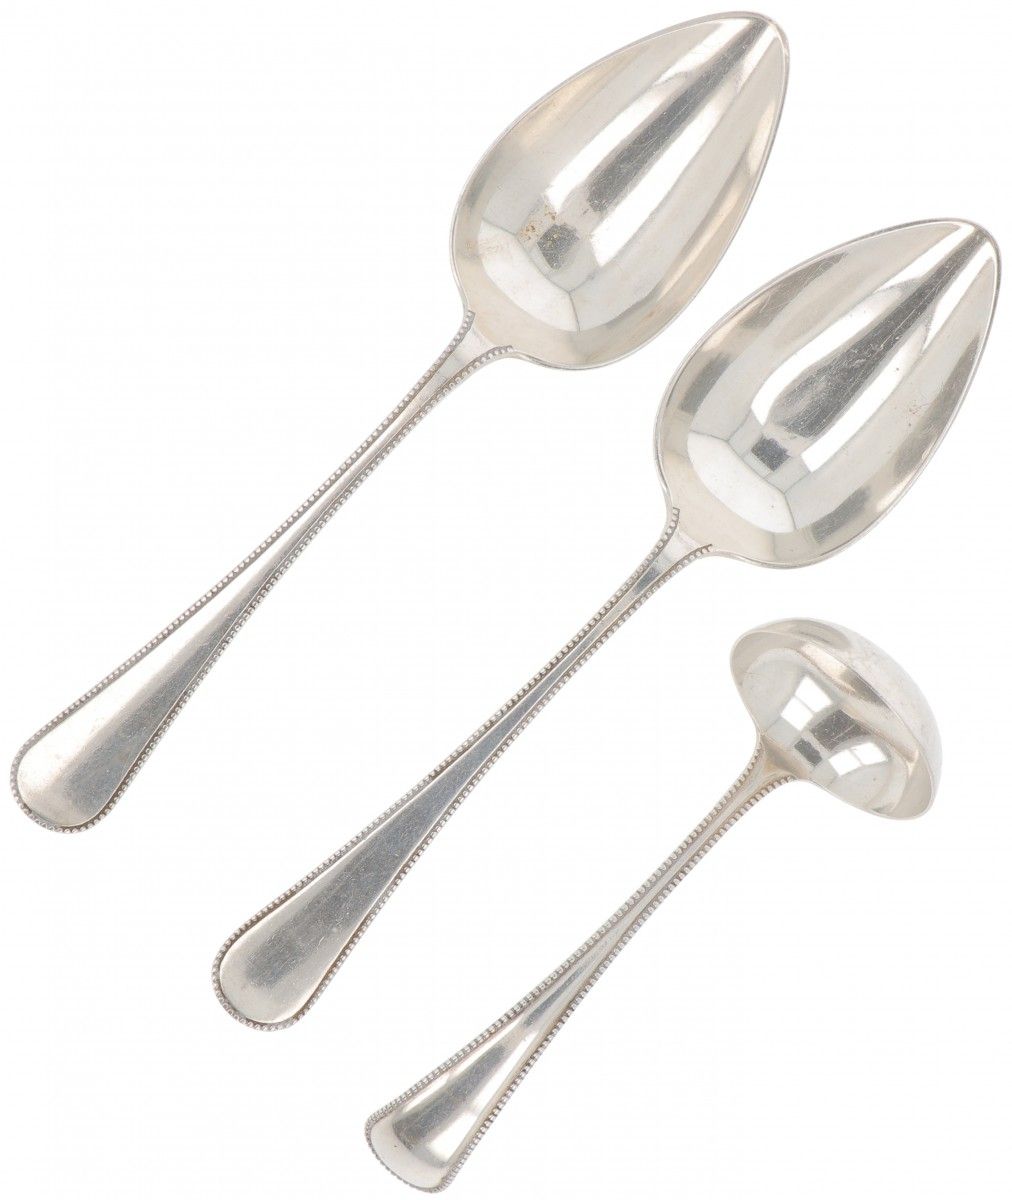 (3) piece lot silver ladles. Composto da 2 cucchiai da verdura e un cucchiaio da&hellip;